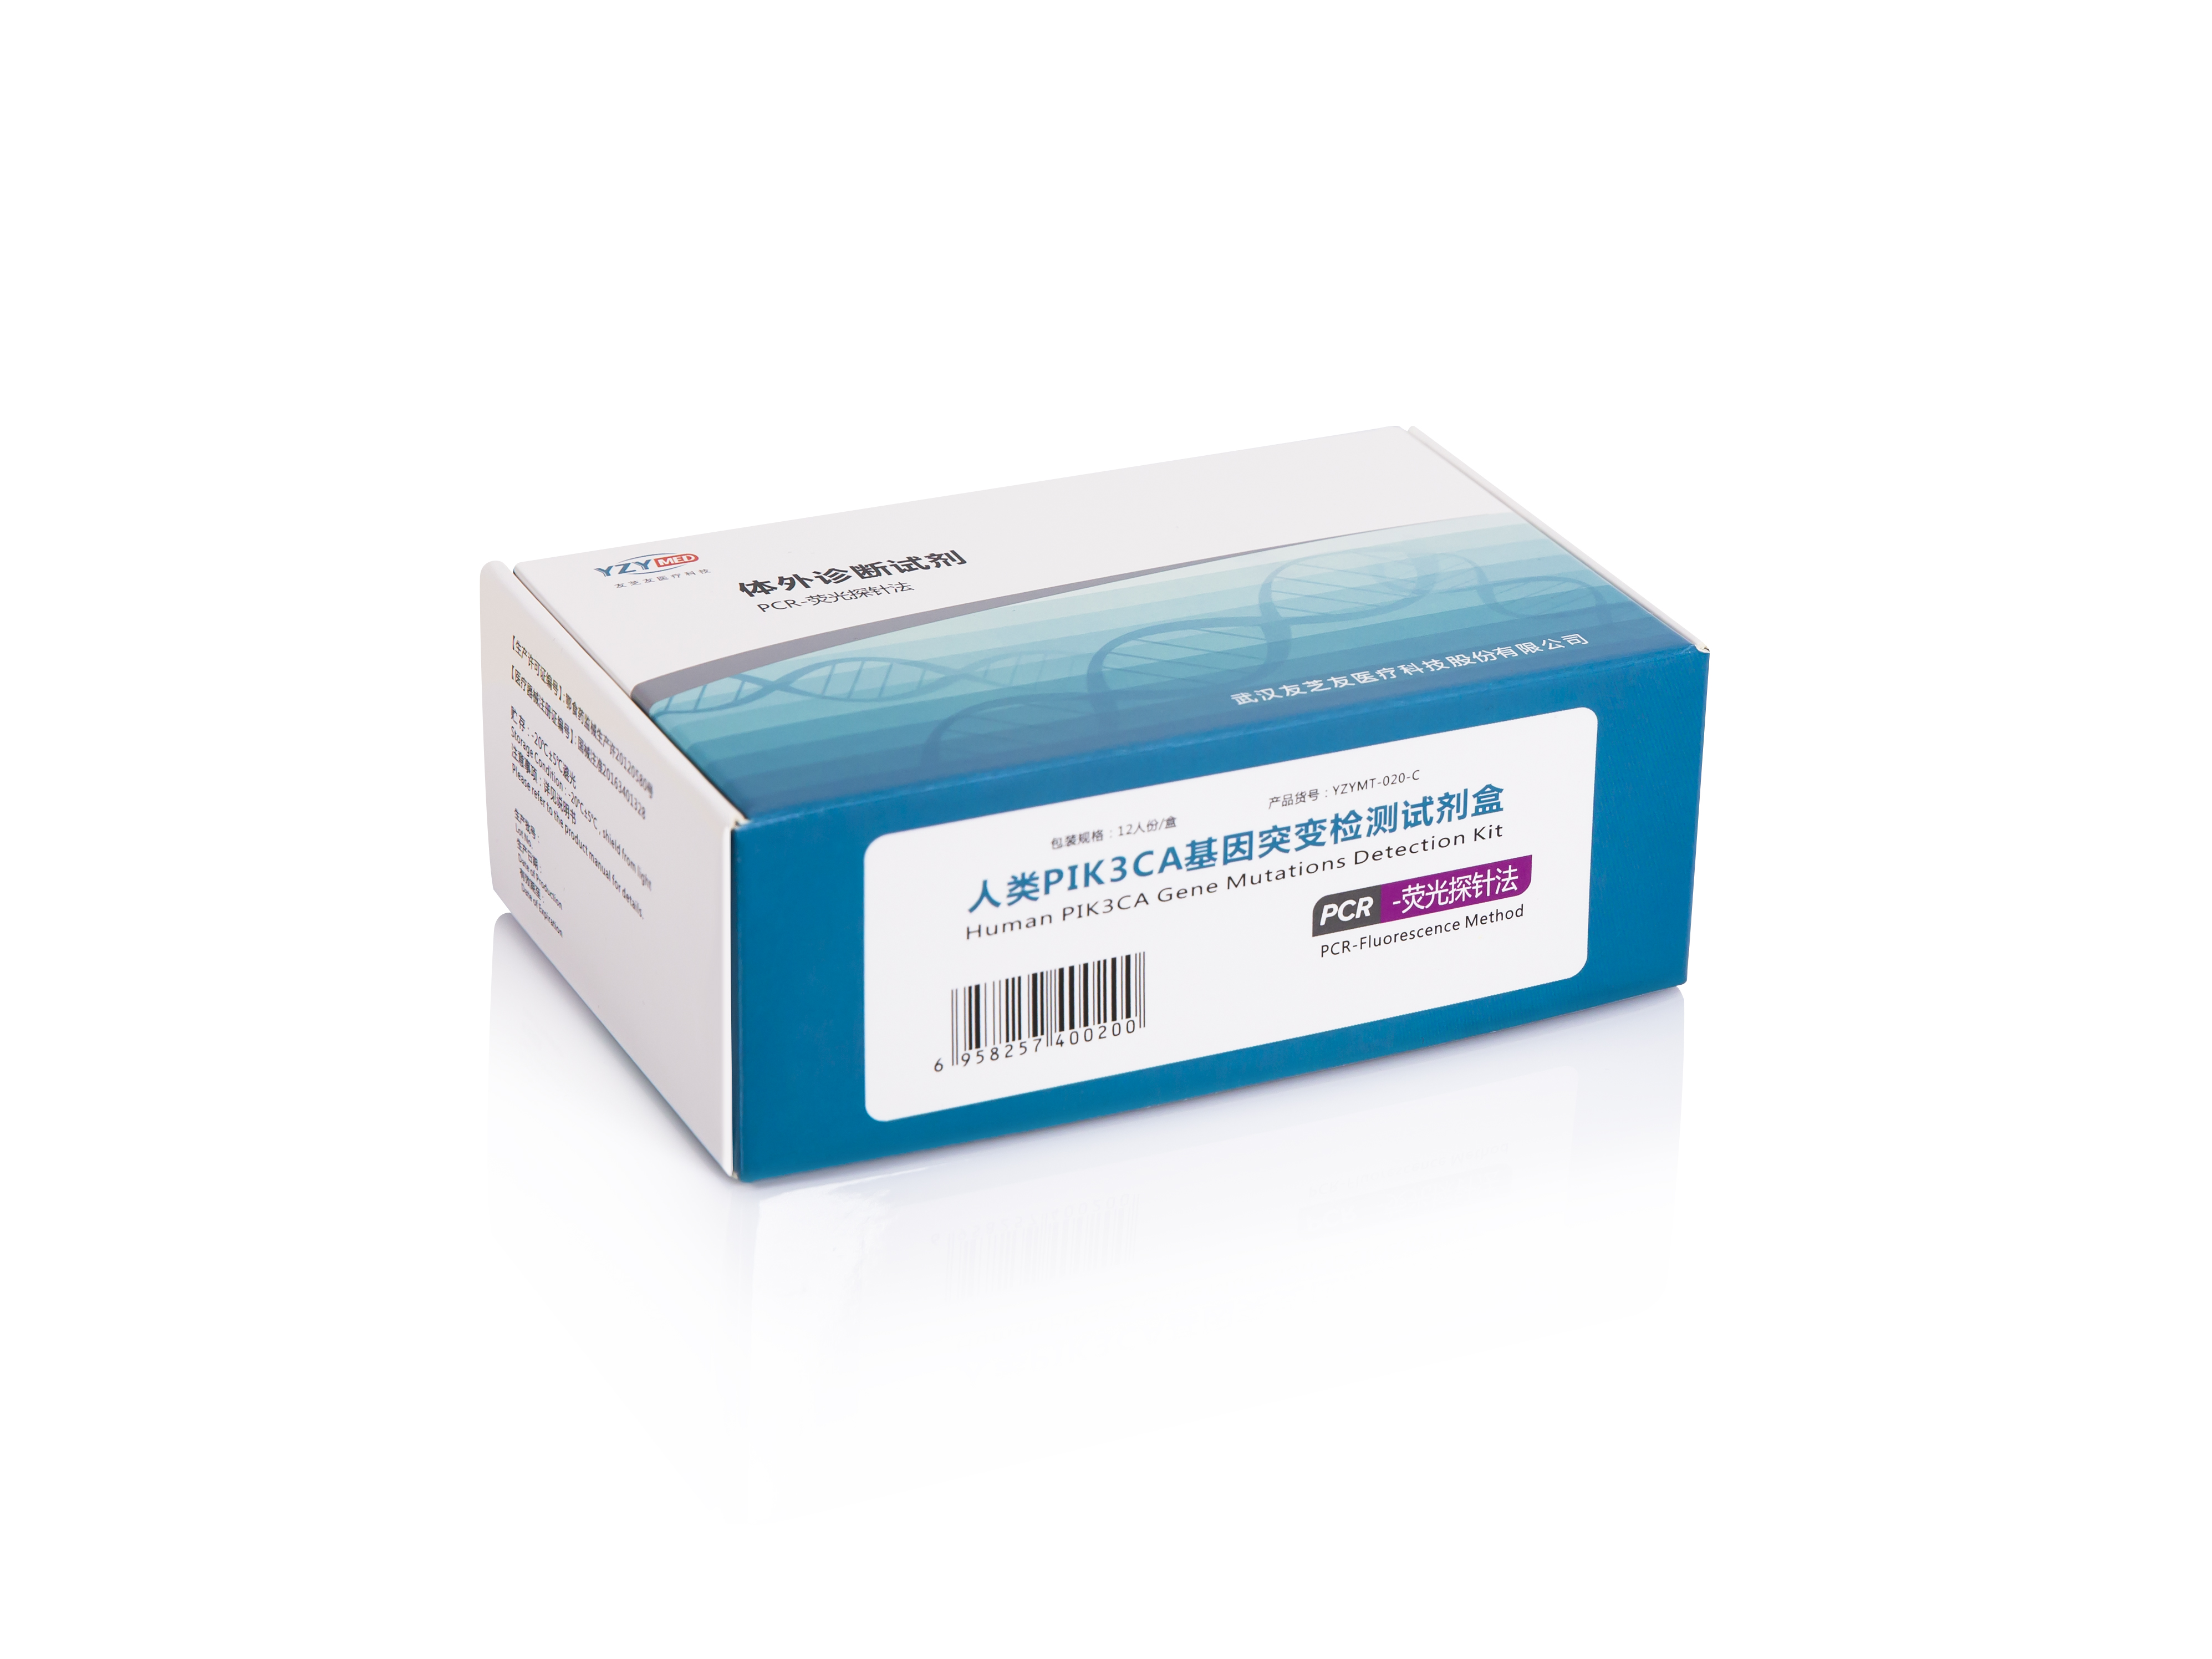 【友芝友】人类PIK3CA基因突变检测试剂盒 (PCR-荧光探针法)-云医购